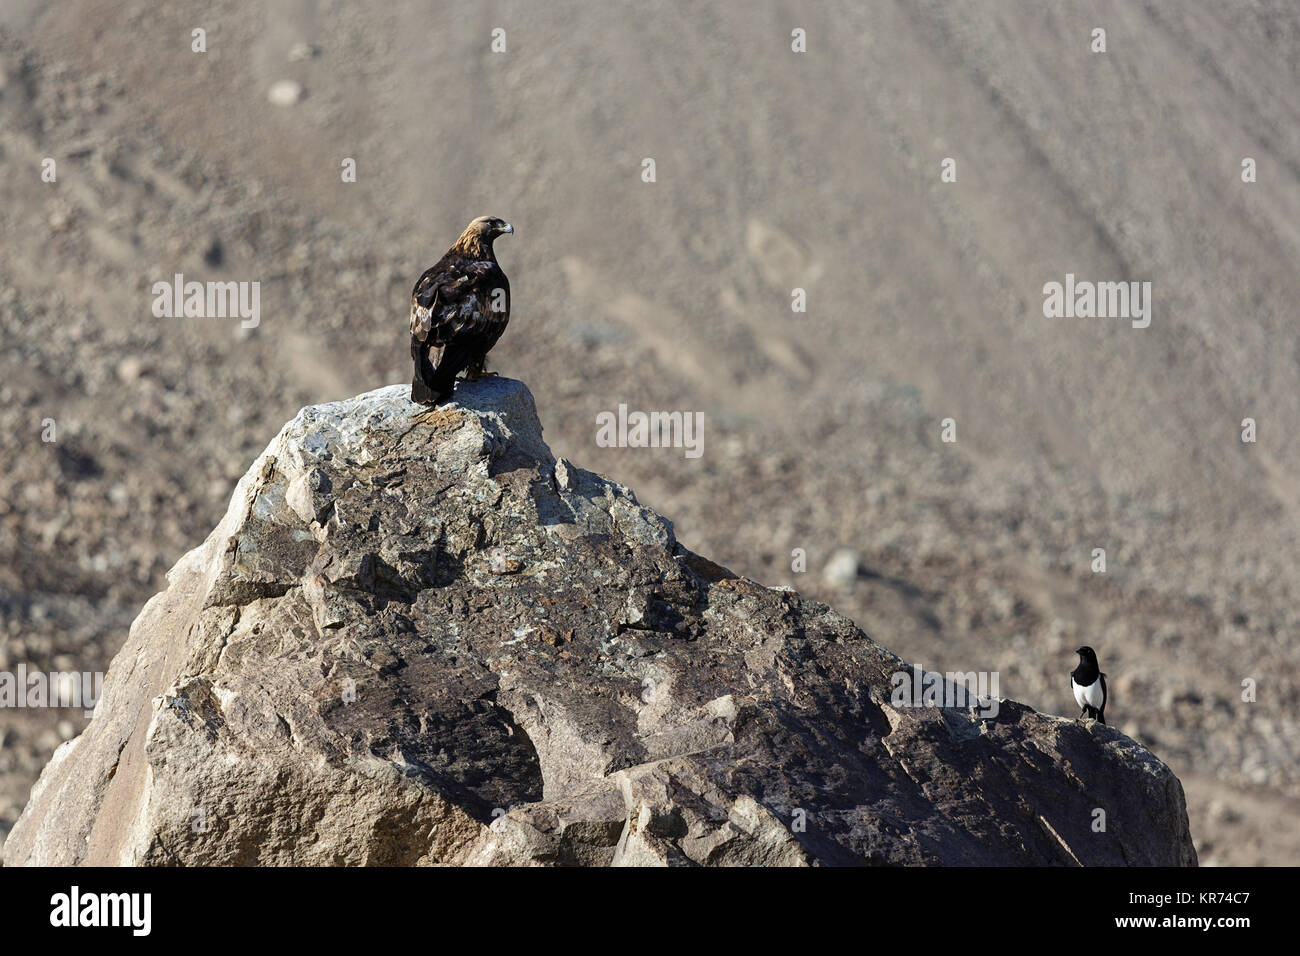 Eaglle in piedi su una grande roccia e guardando il piccolo uccello accanto a lui, Ladakh, Jammu e Kashmir in India. Foto Stock